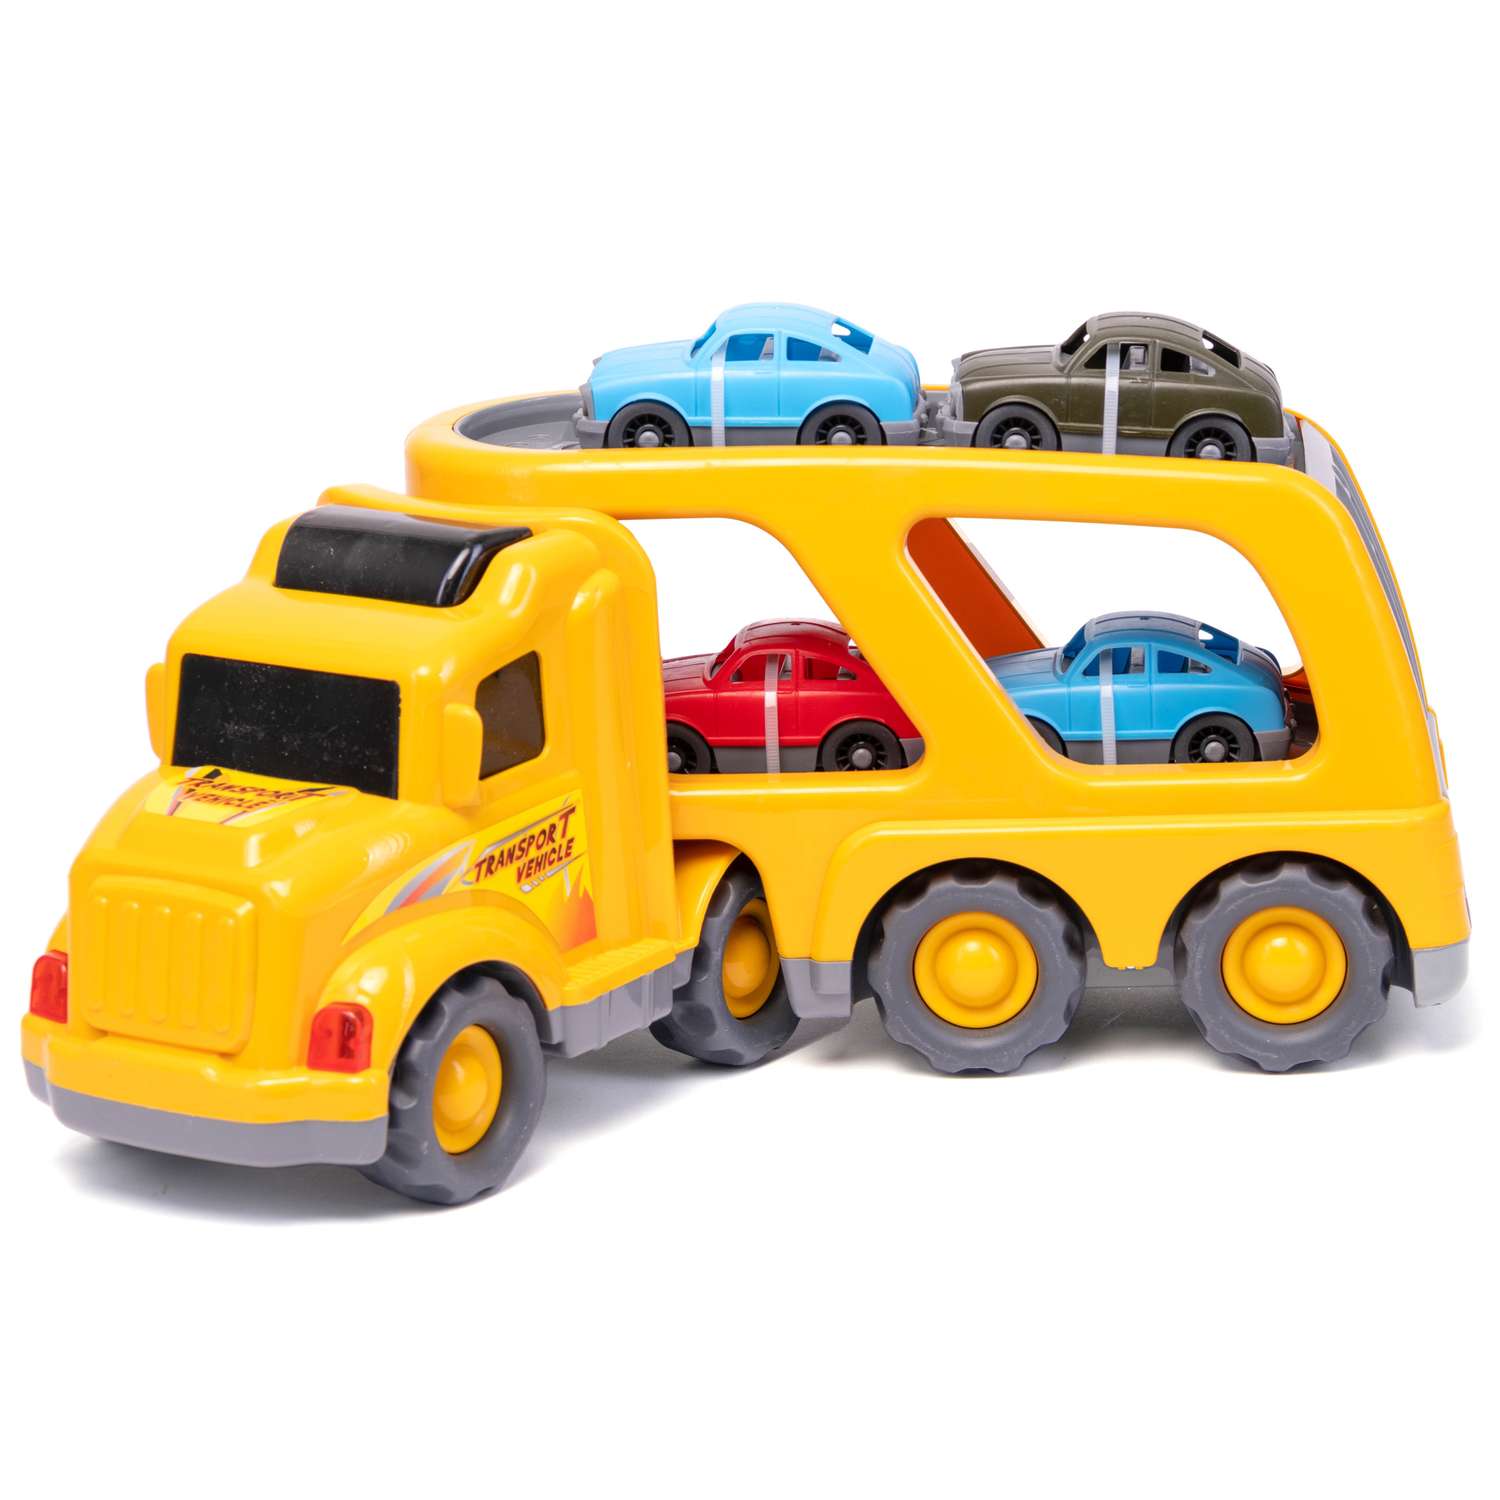 Машина Нижегородская игрушка Автовоз желтый ктг257_ж - фото 2